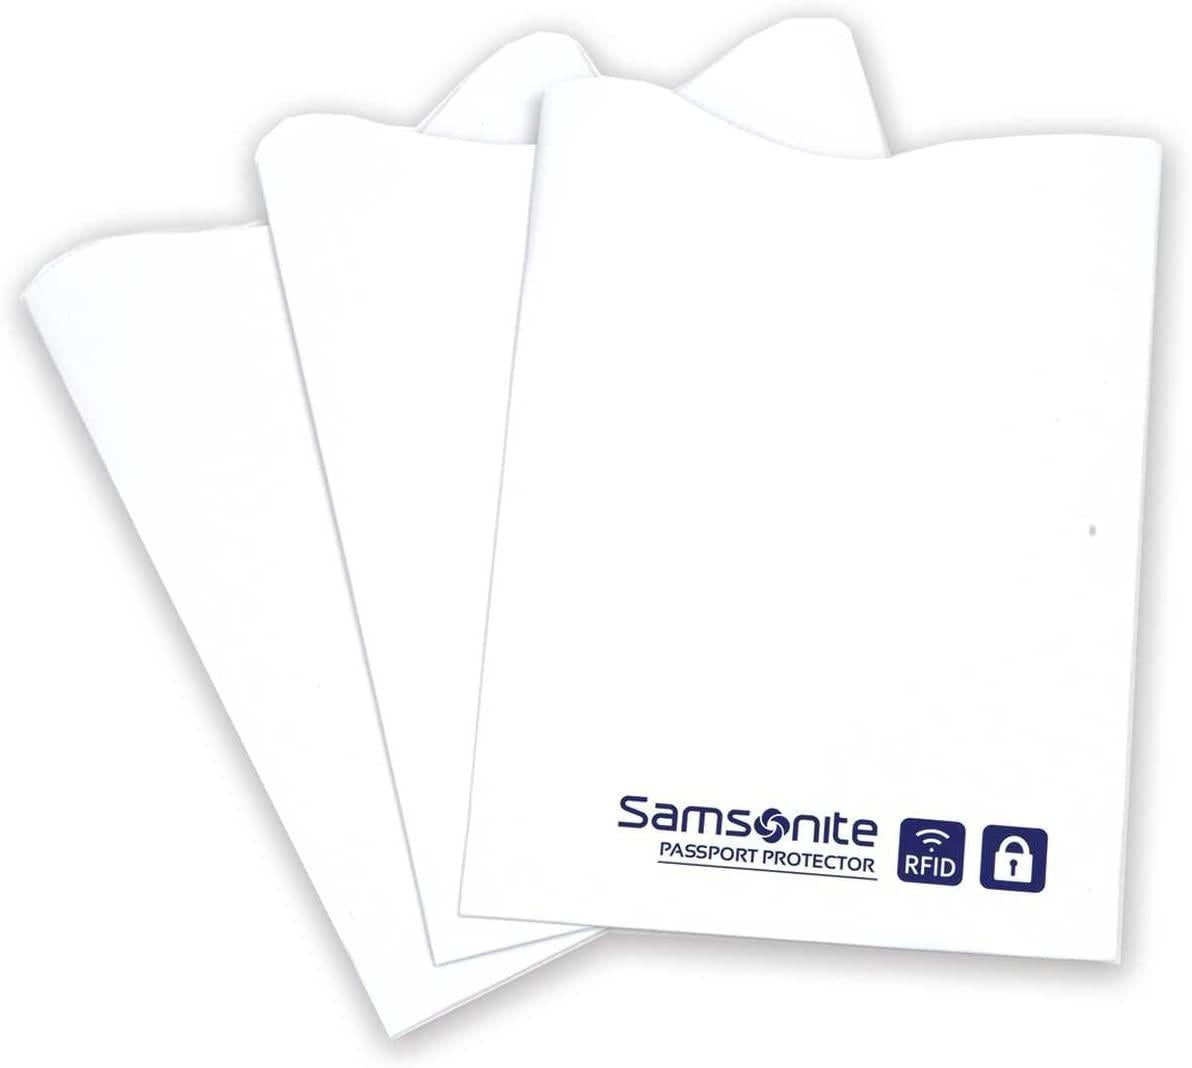 Samsonite RFID Credit Card Sleeves